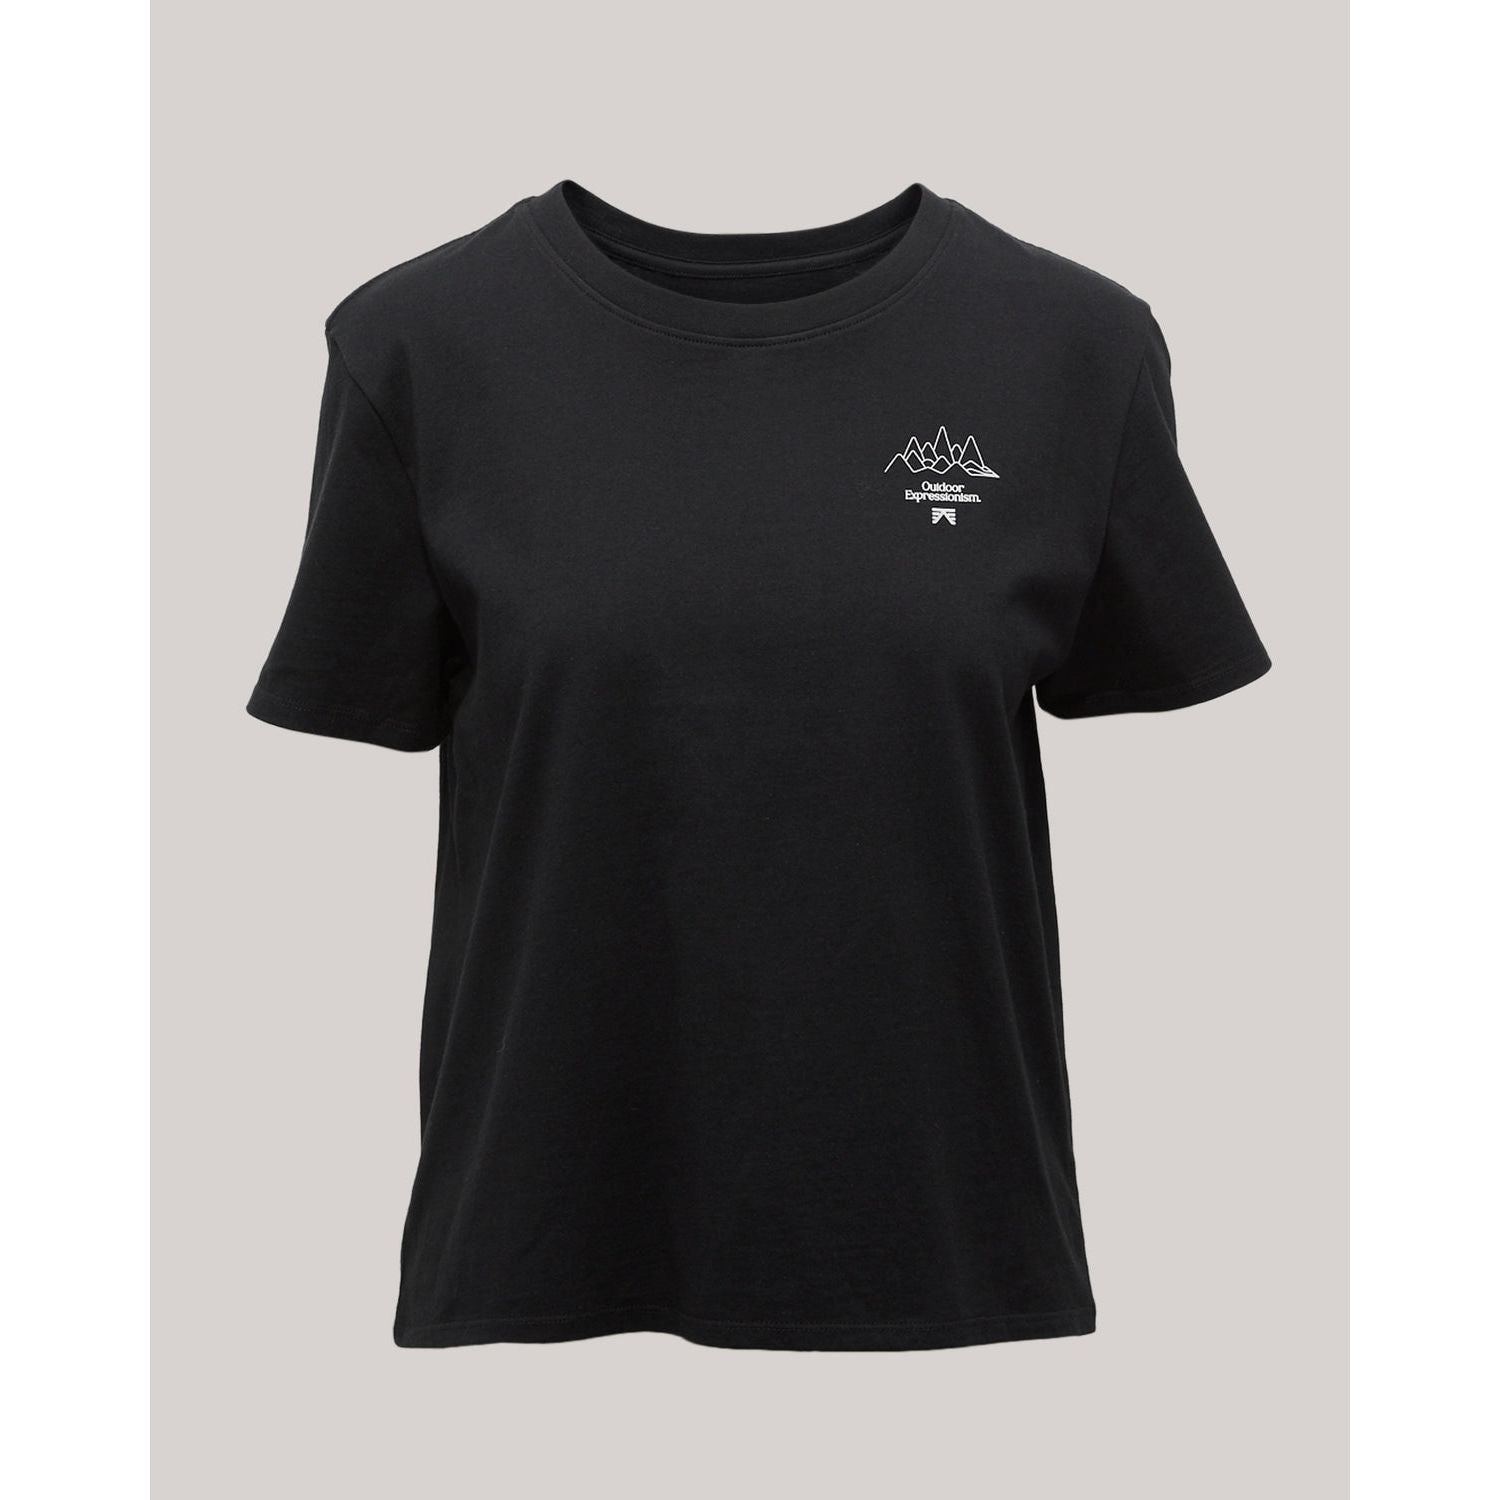 T-Shirt Lathom pour Femmes|| Lathom T-Shirt for Women's